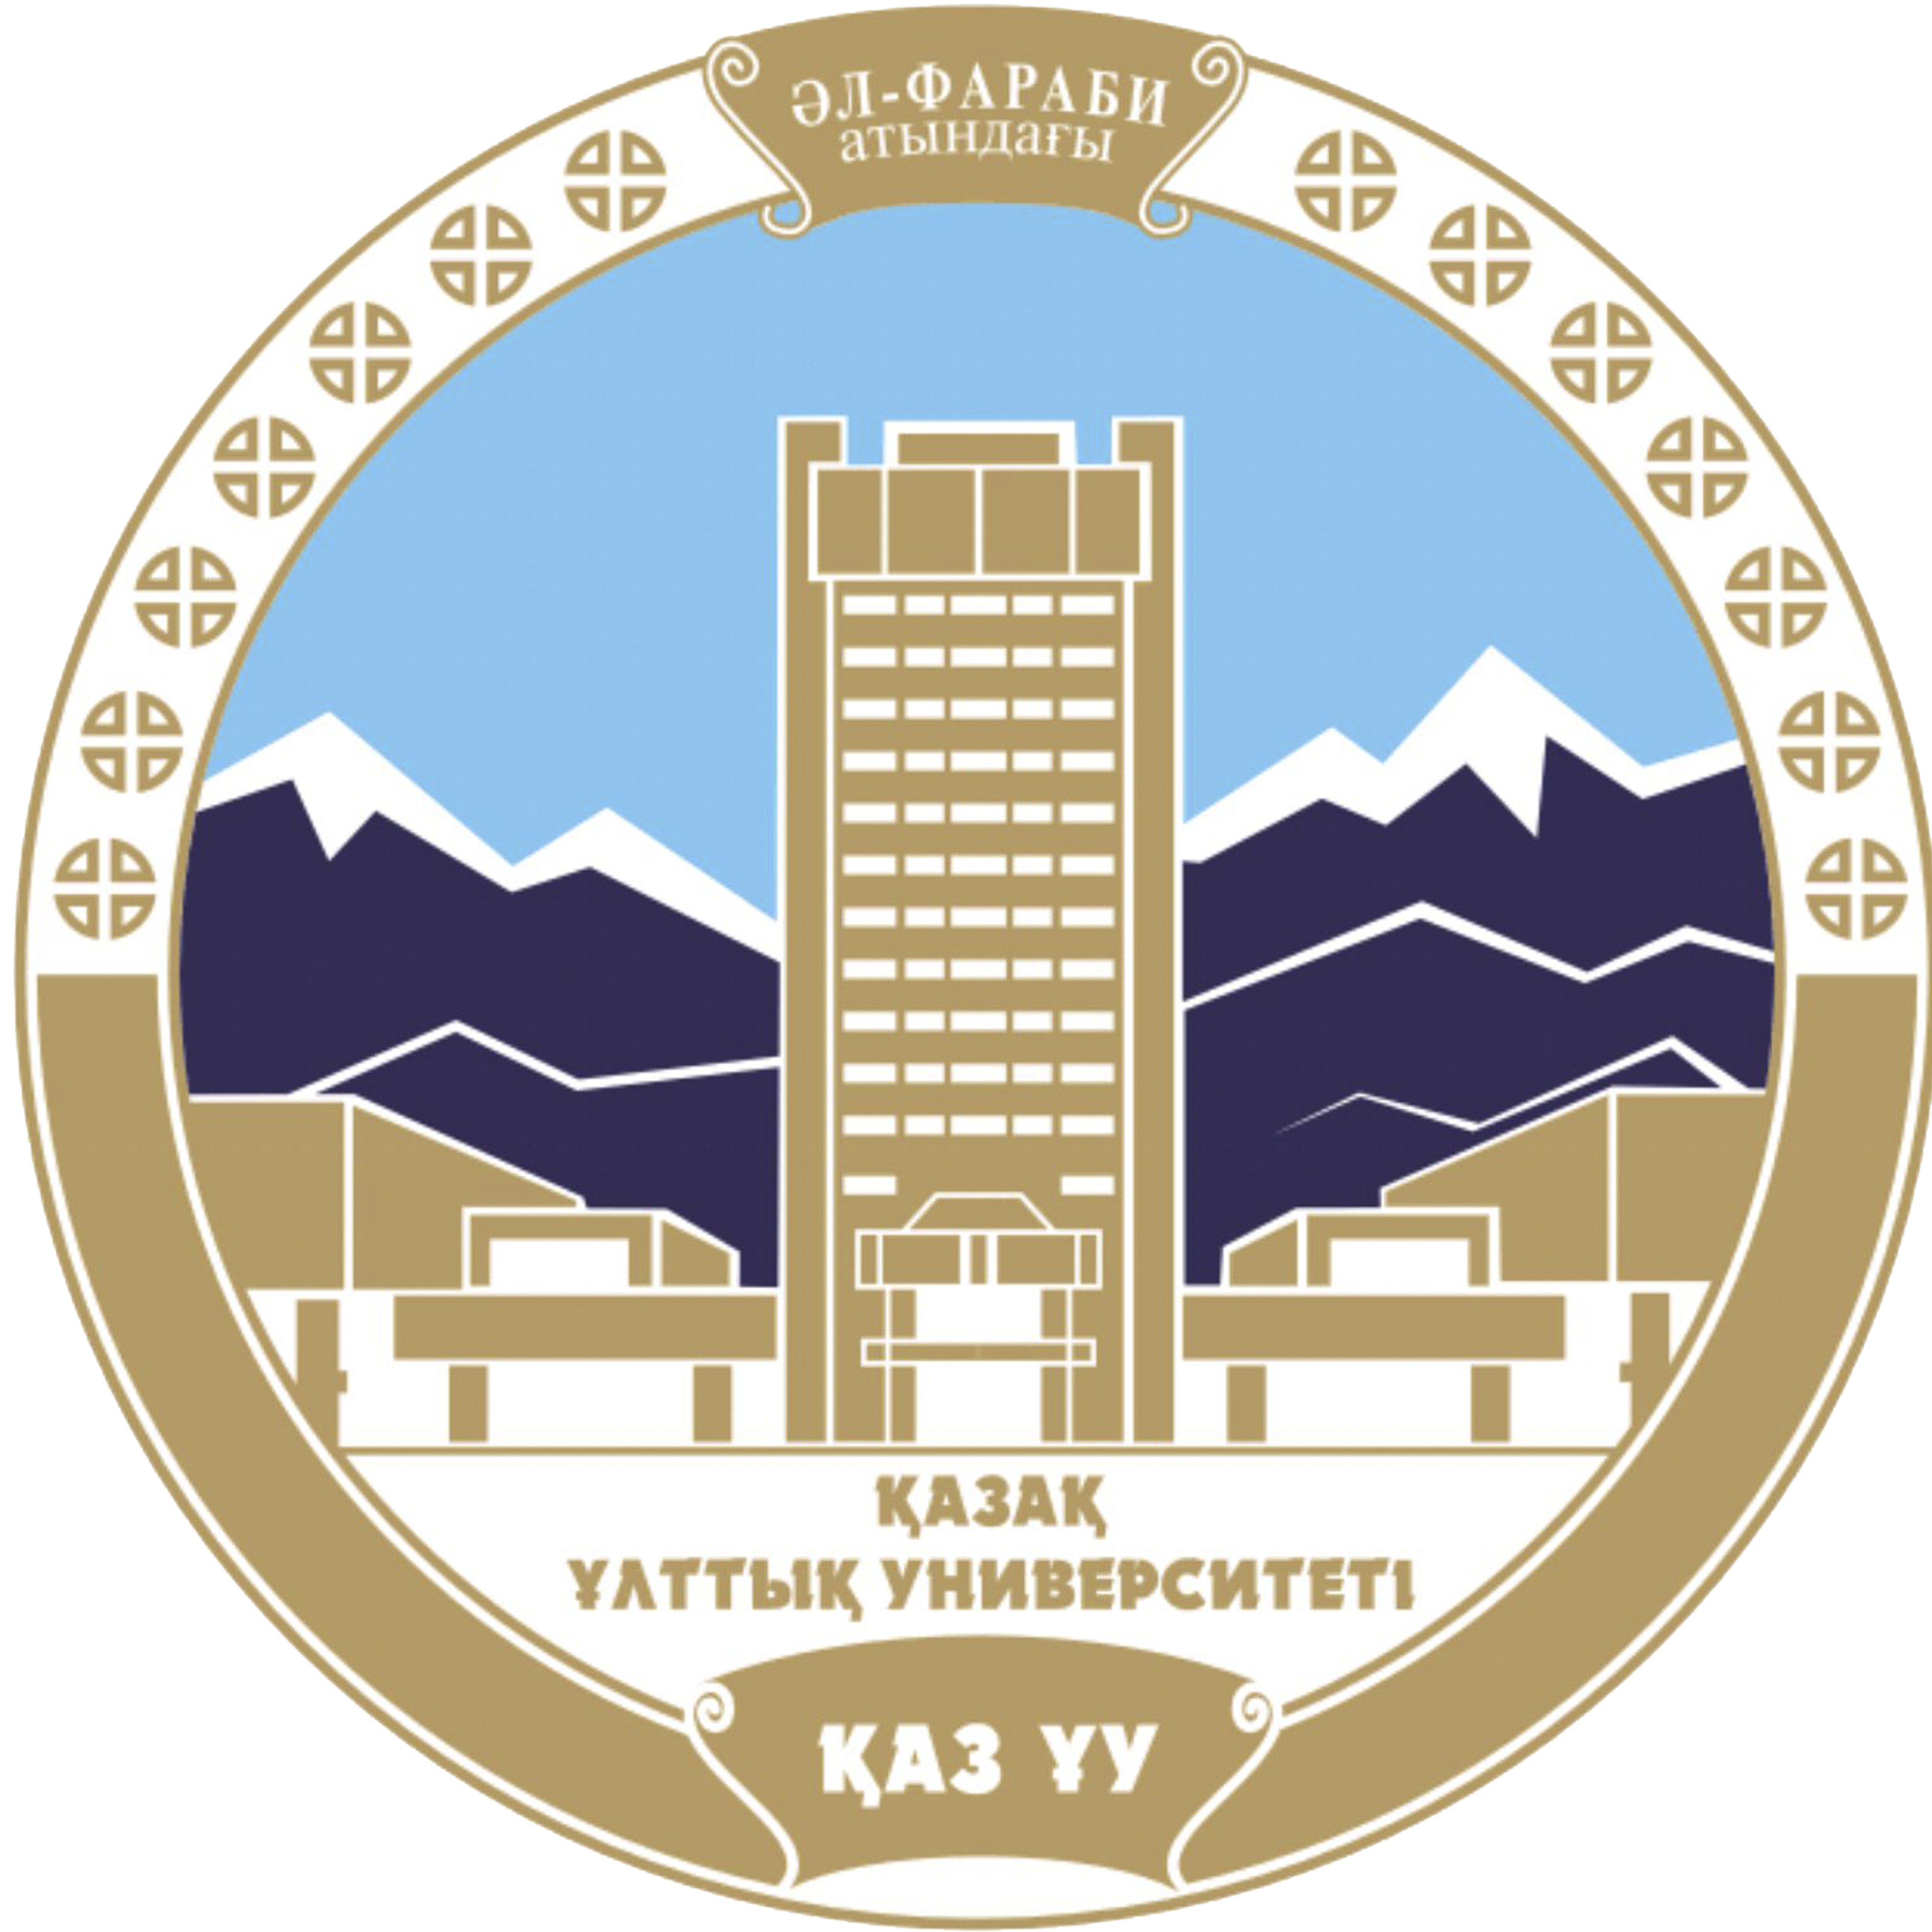 kokanduni.uz - Kokand University